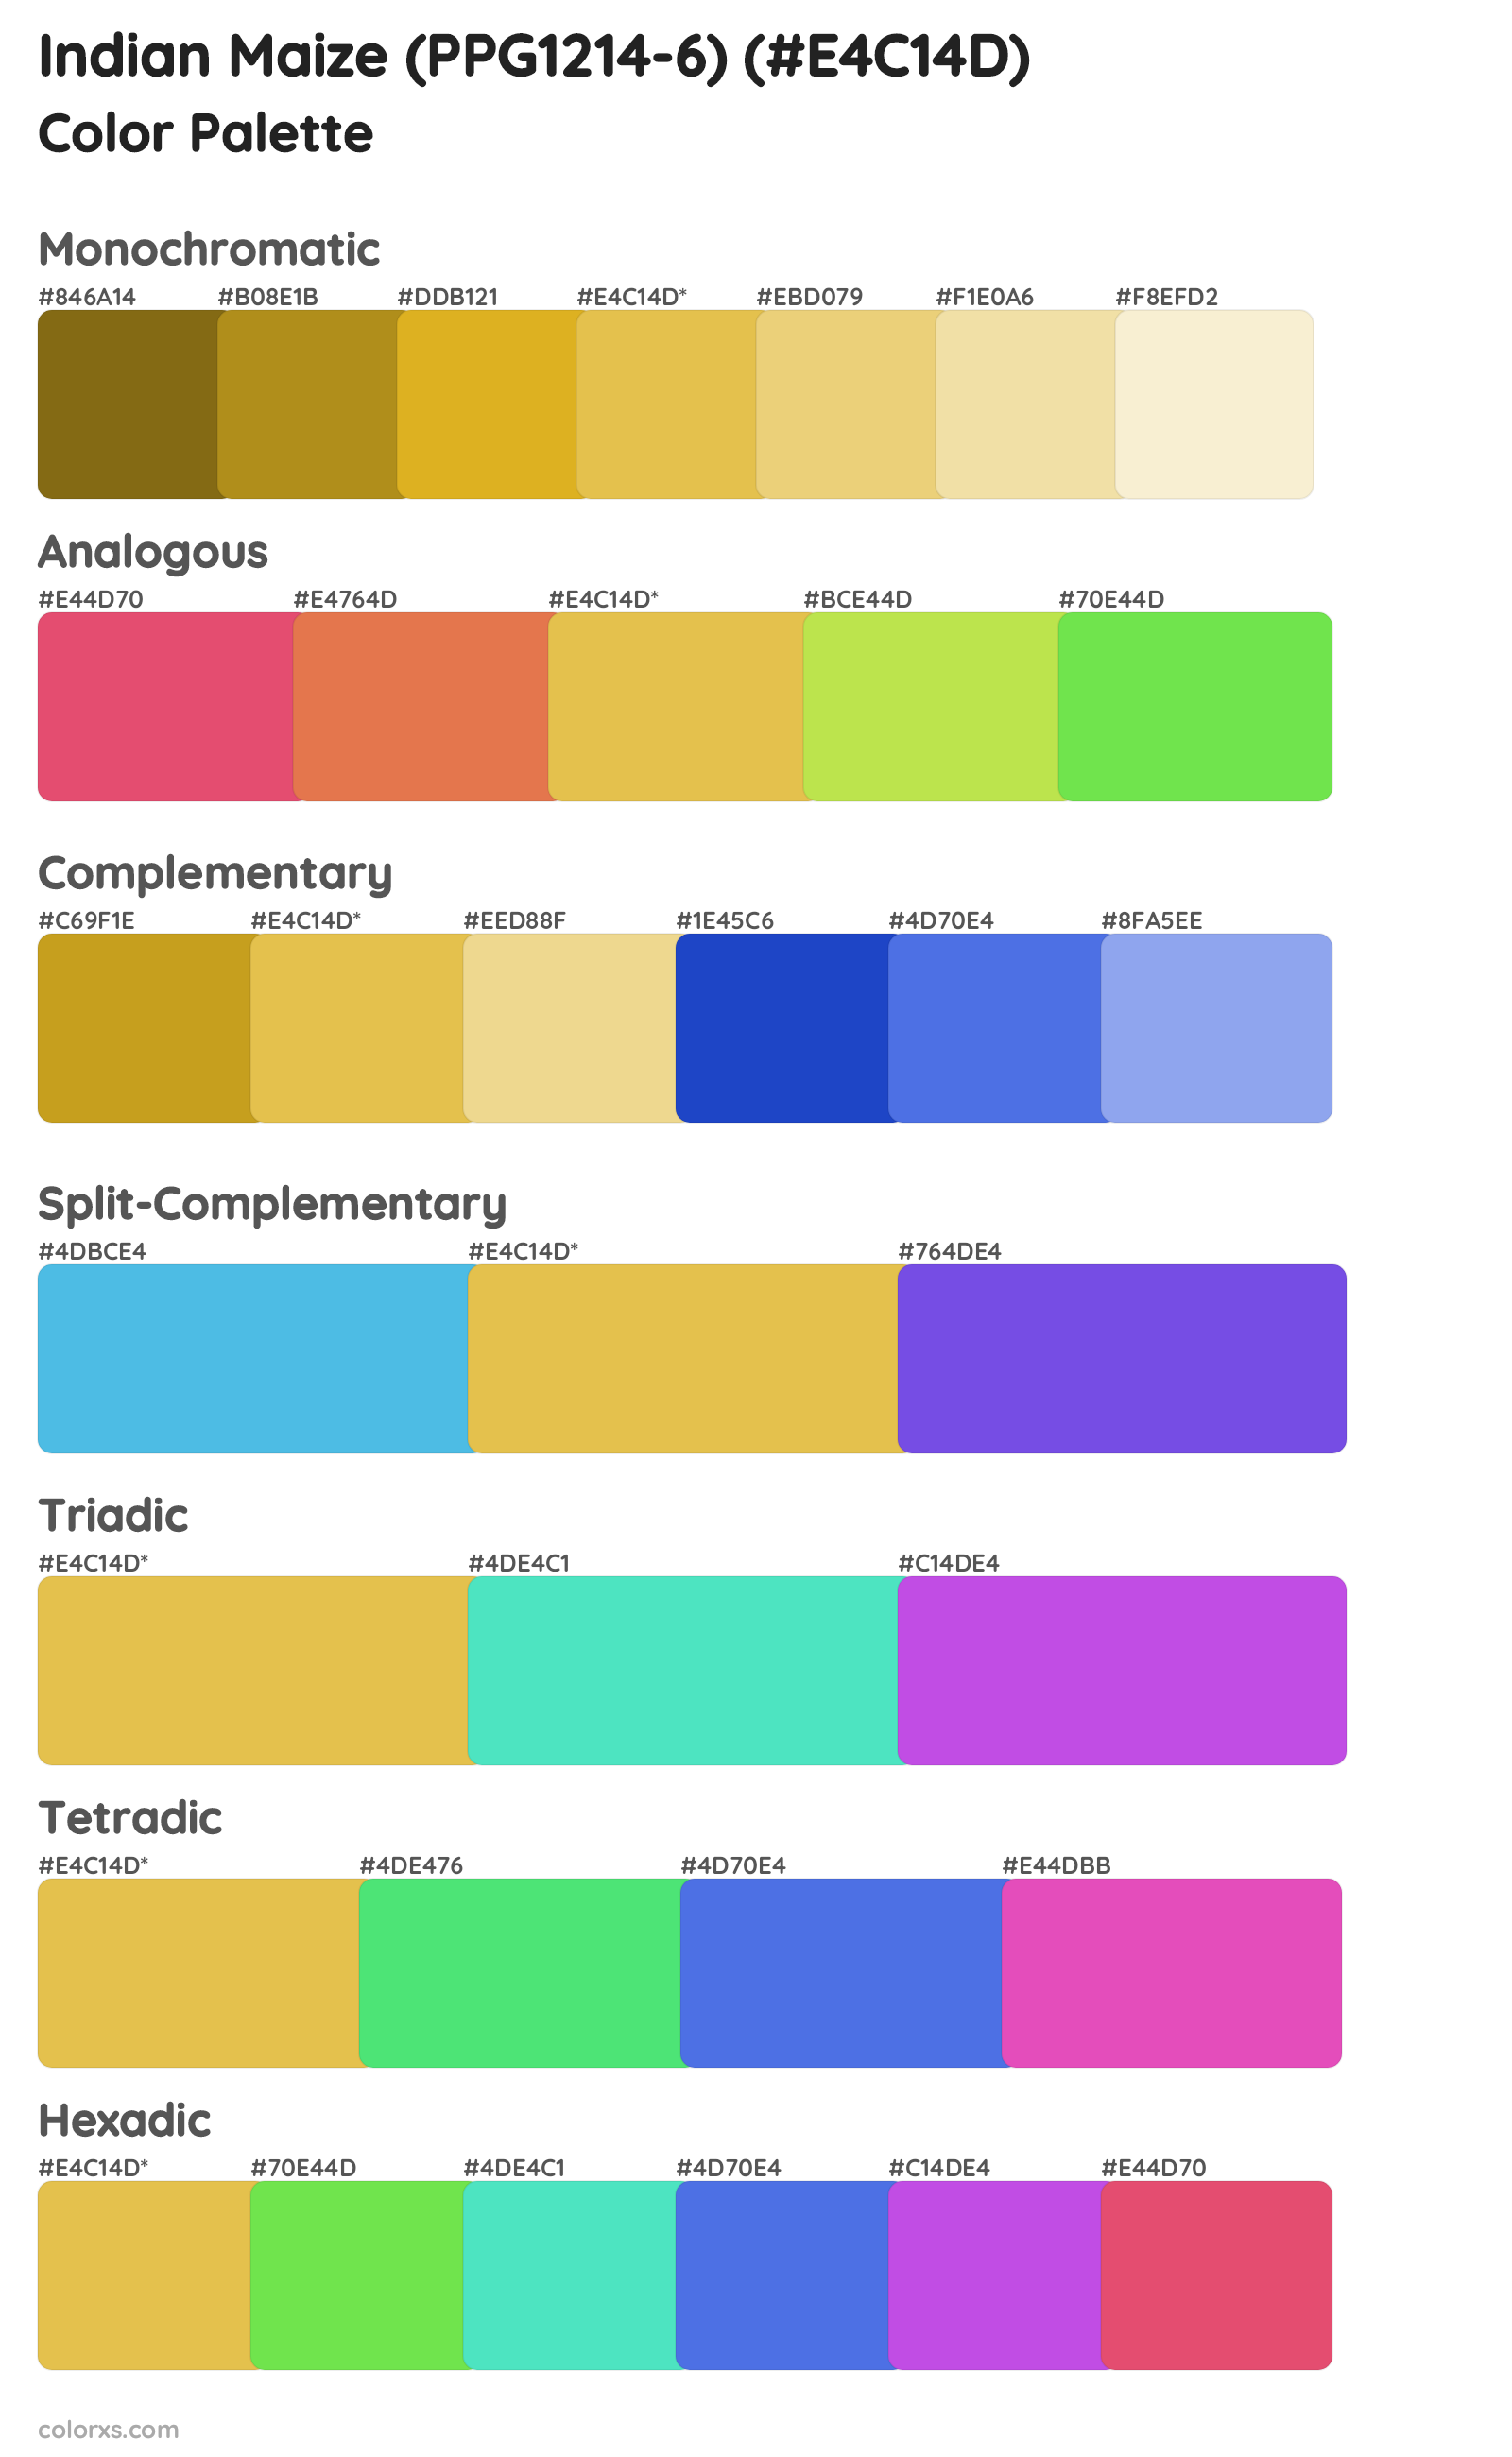 Indian Maize (PPG1214-6) Color Scheme Palettes